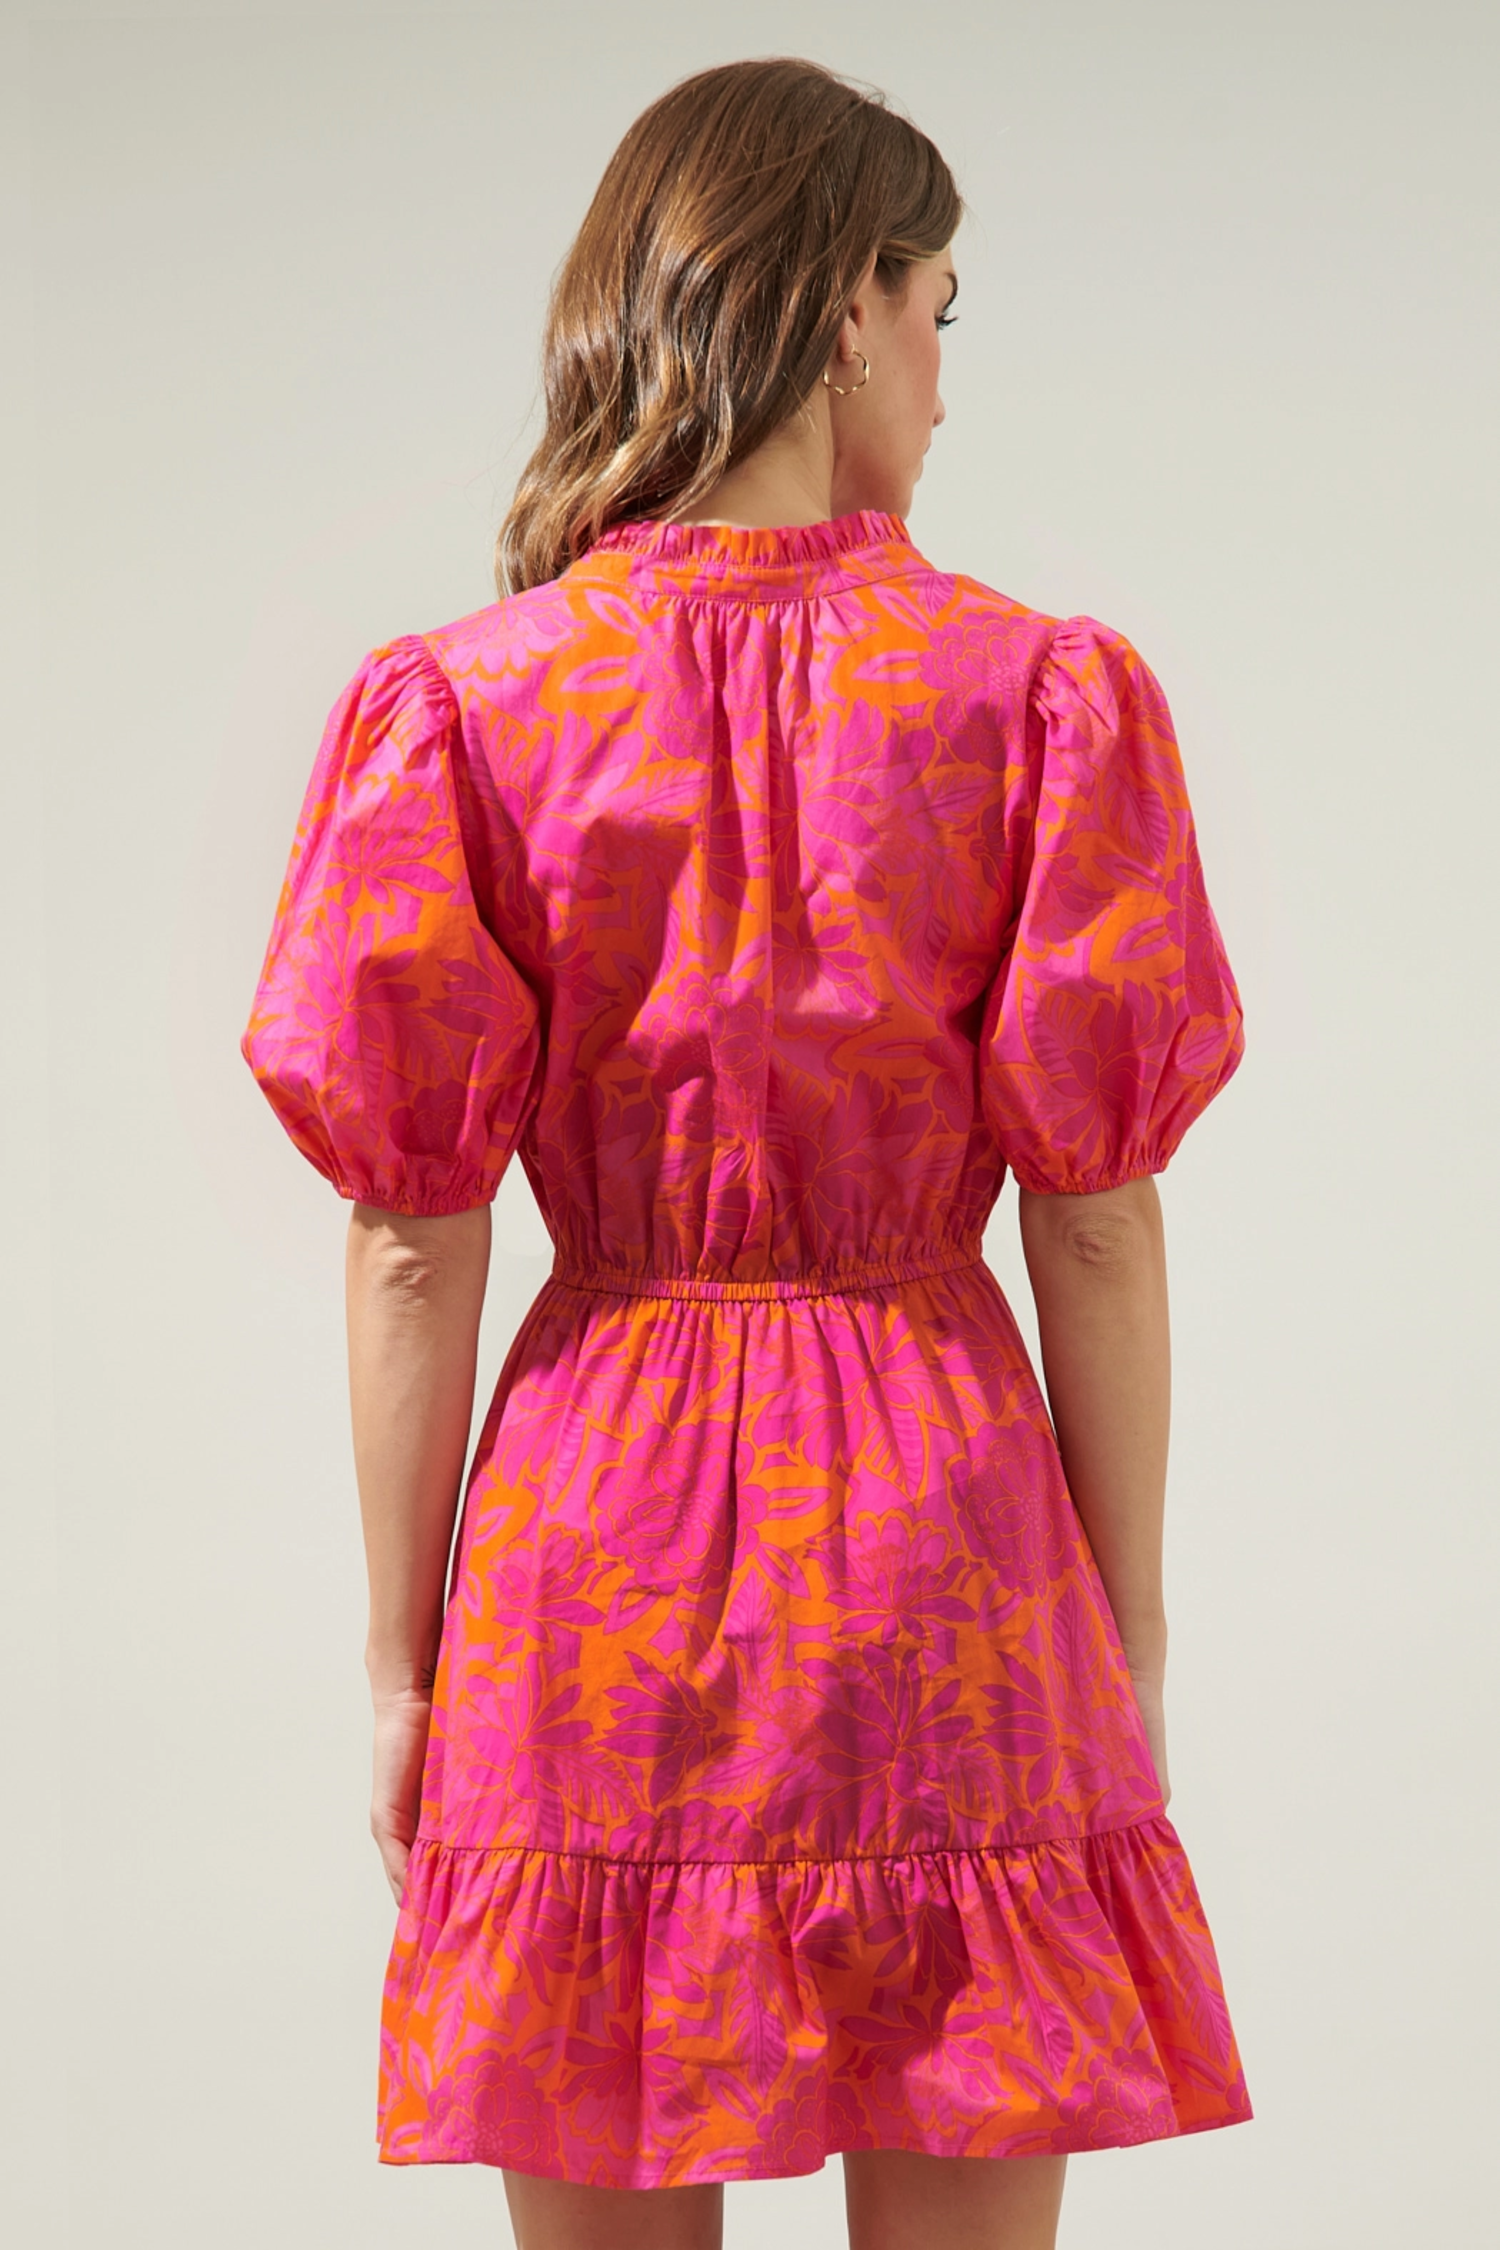 Bali Tropics Marissa Mini Poplin Dress - Amber Marie and Company